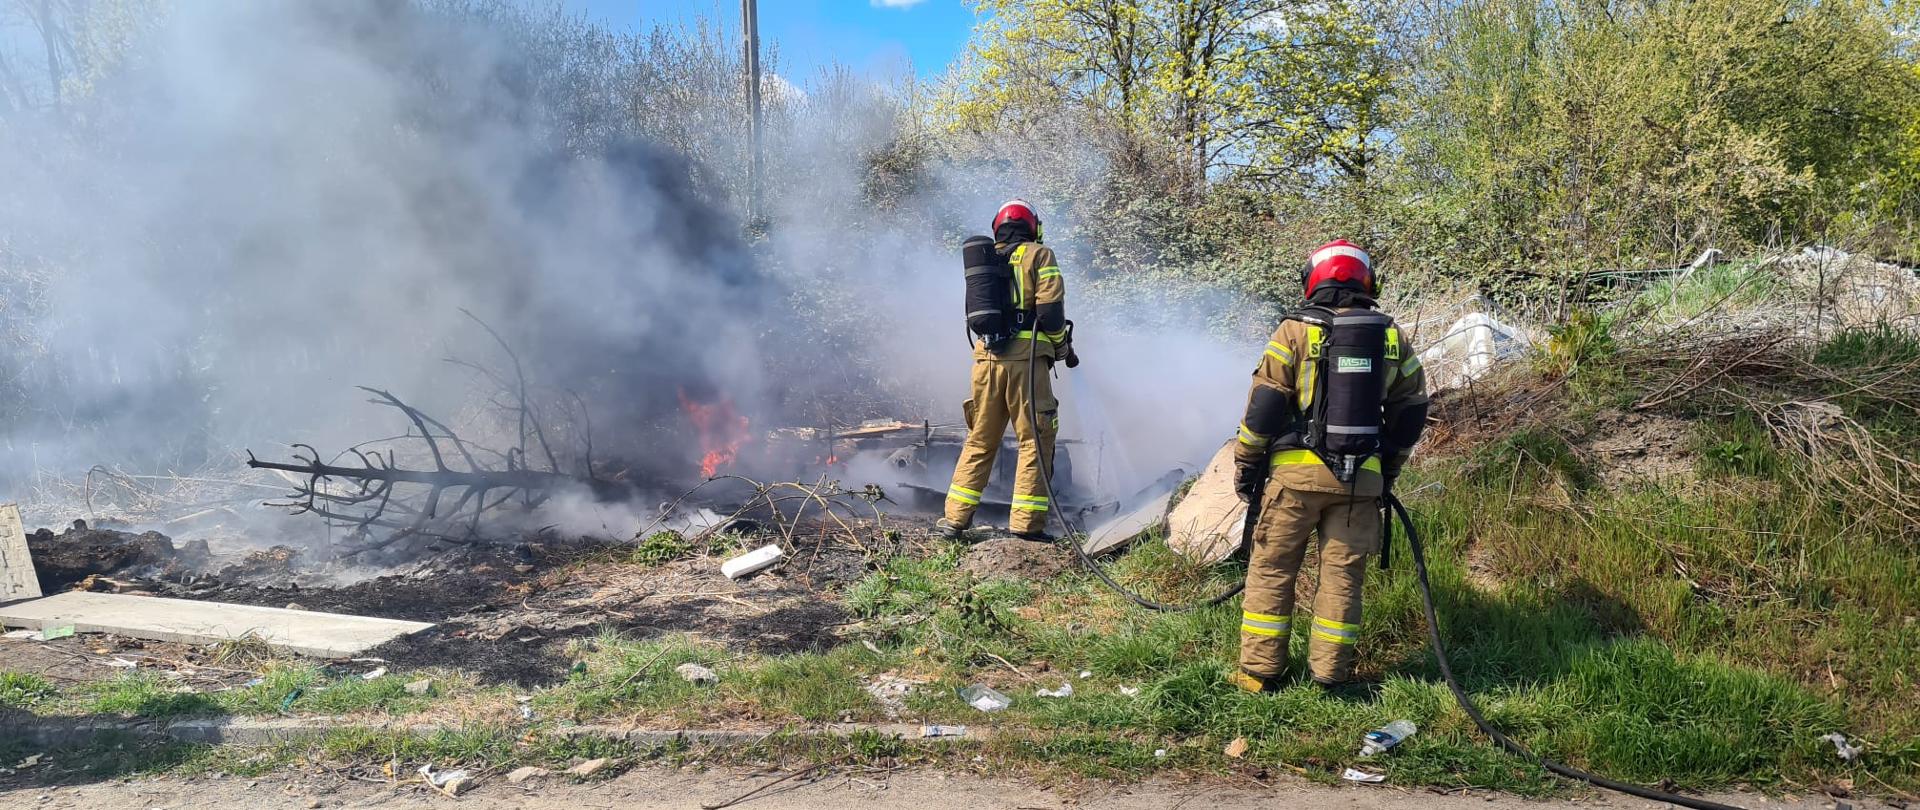 Podsumowanie zdarzeń w dniach 11.04 - 17.04.2022 r. - zdjęcie przedstawia 2 strażaków podających prąd wody na pożar dzikiego wysypiska śmieci